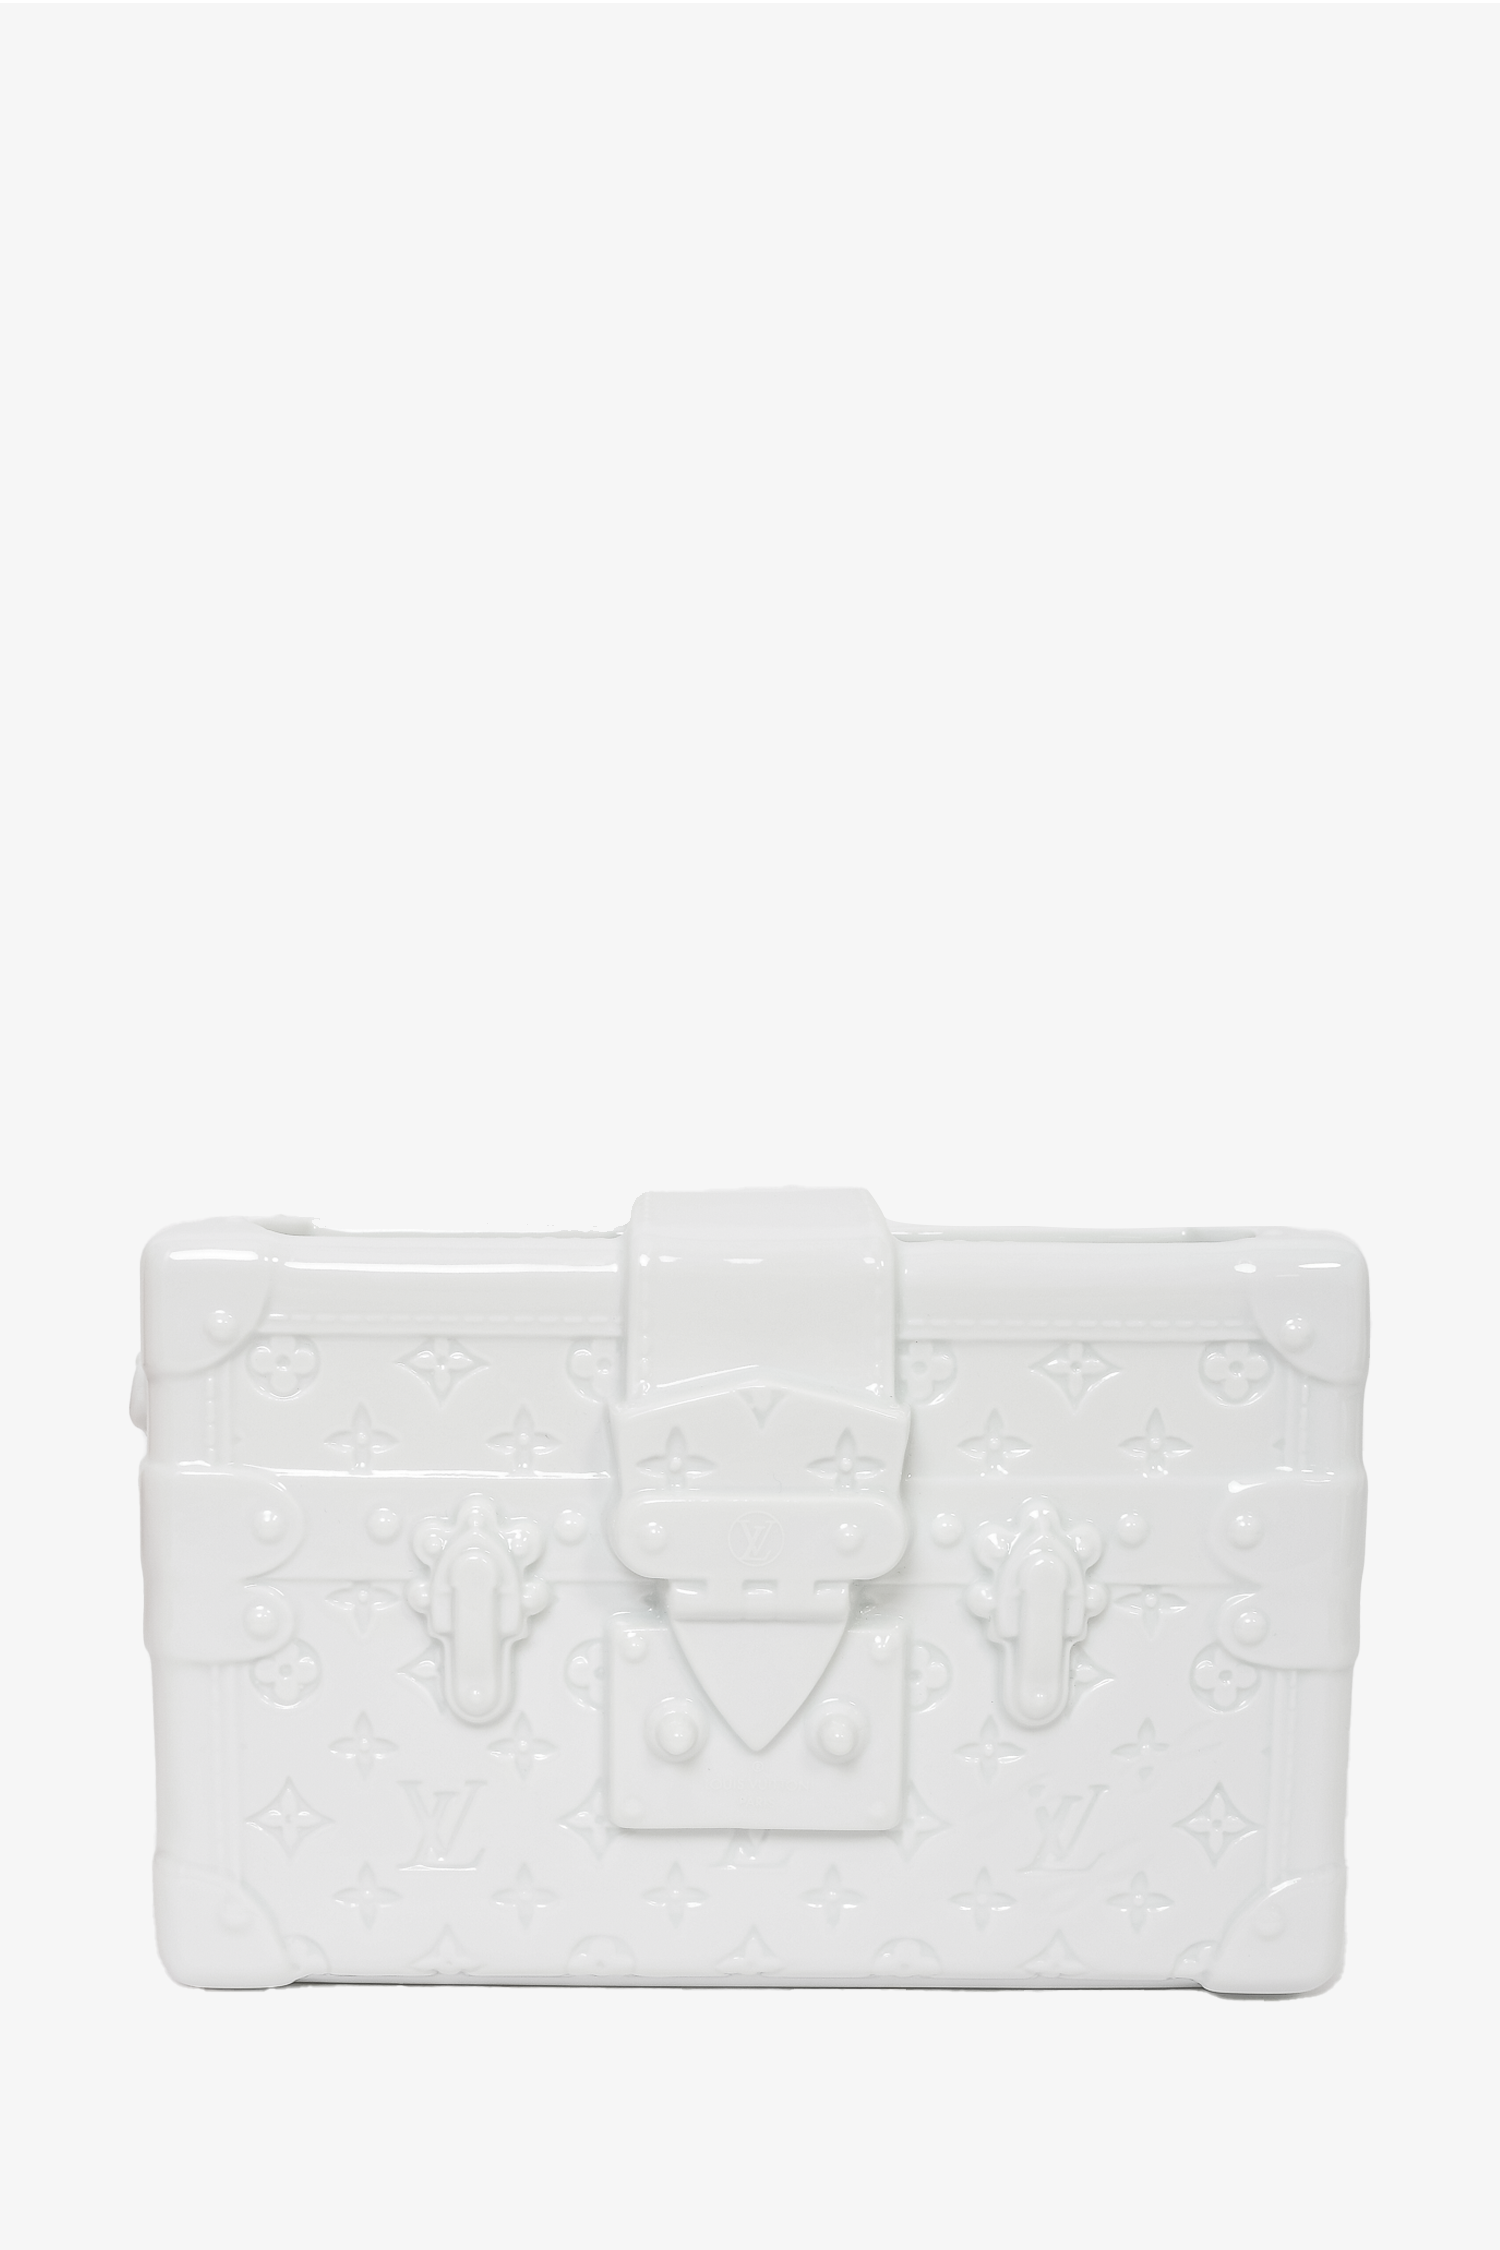 Louis Vuitton Louis Vuitton Petite Malle Porcelain Vase - White Decorative  Accents, Decor & Accessories - LOU649485